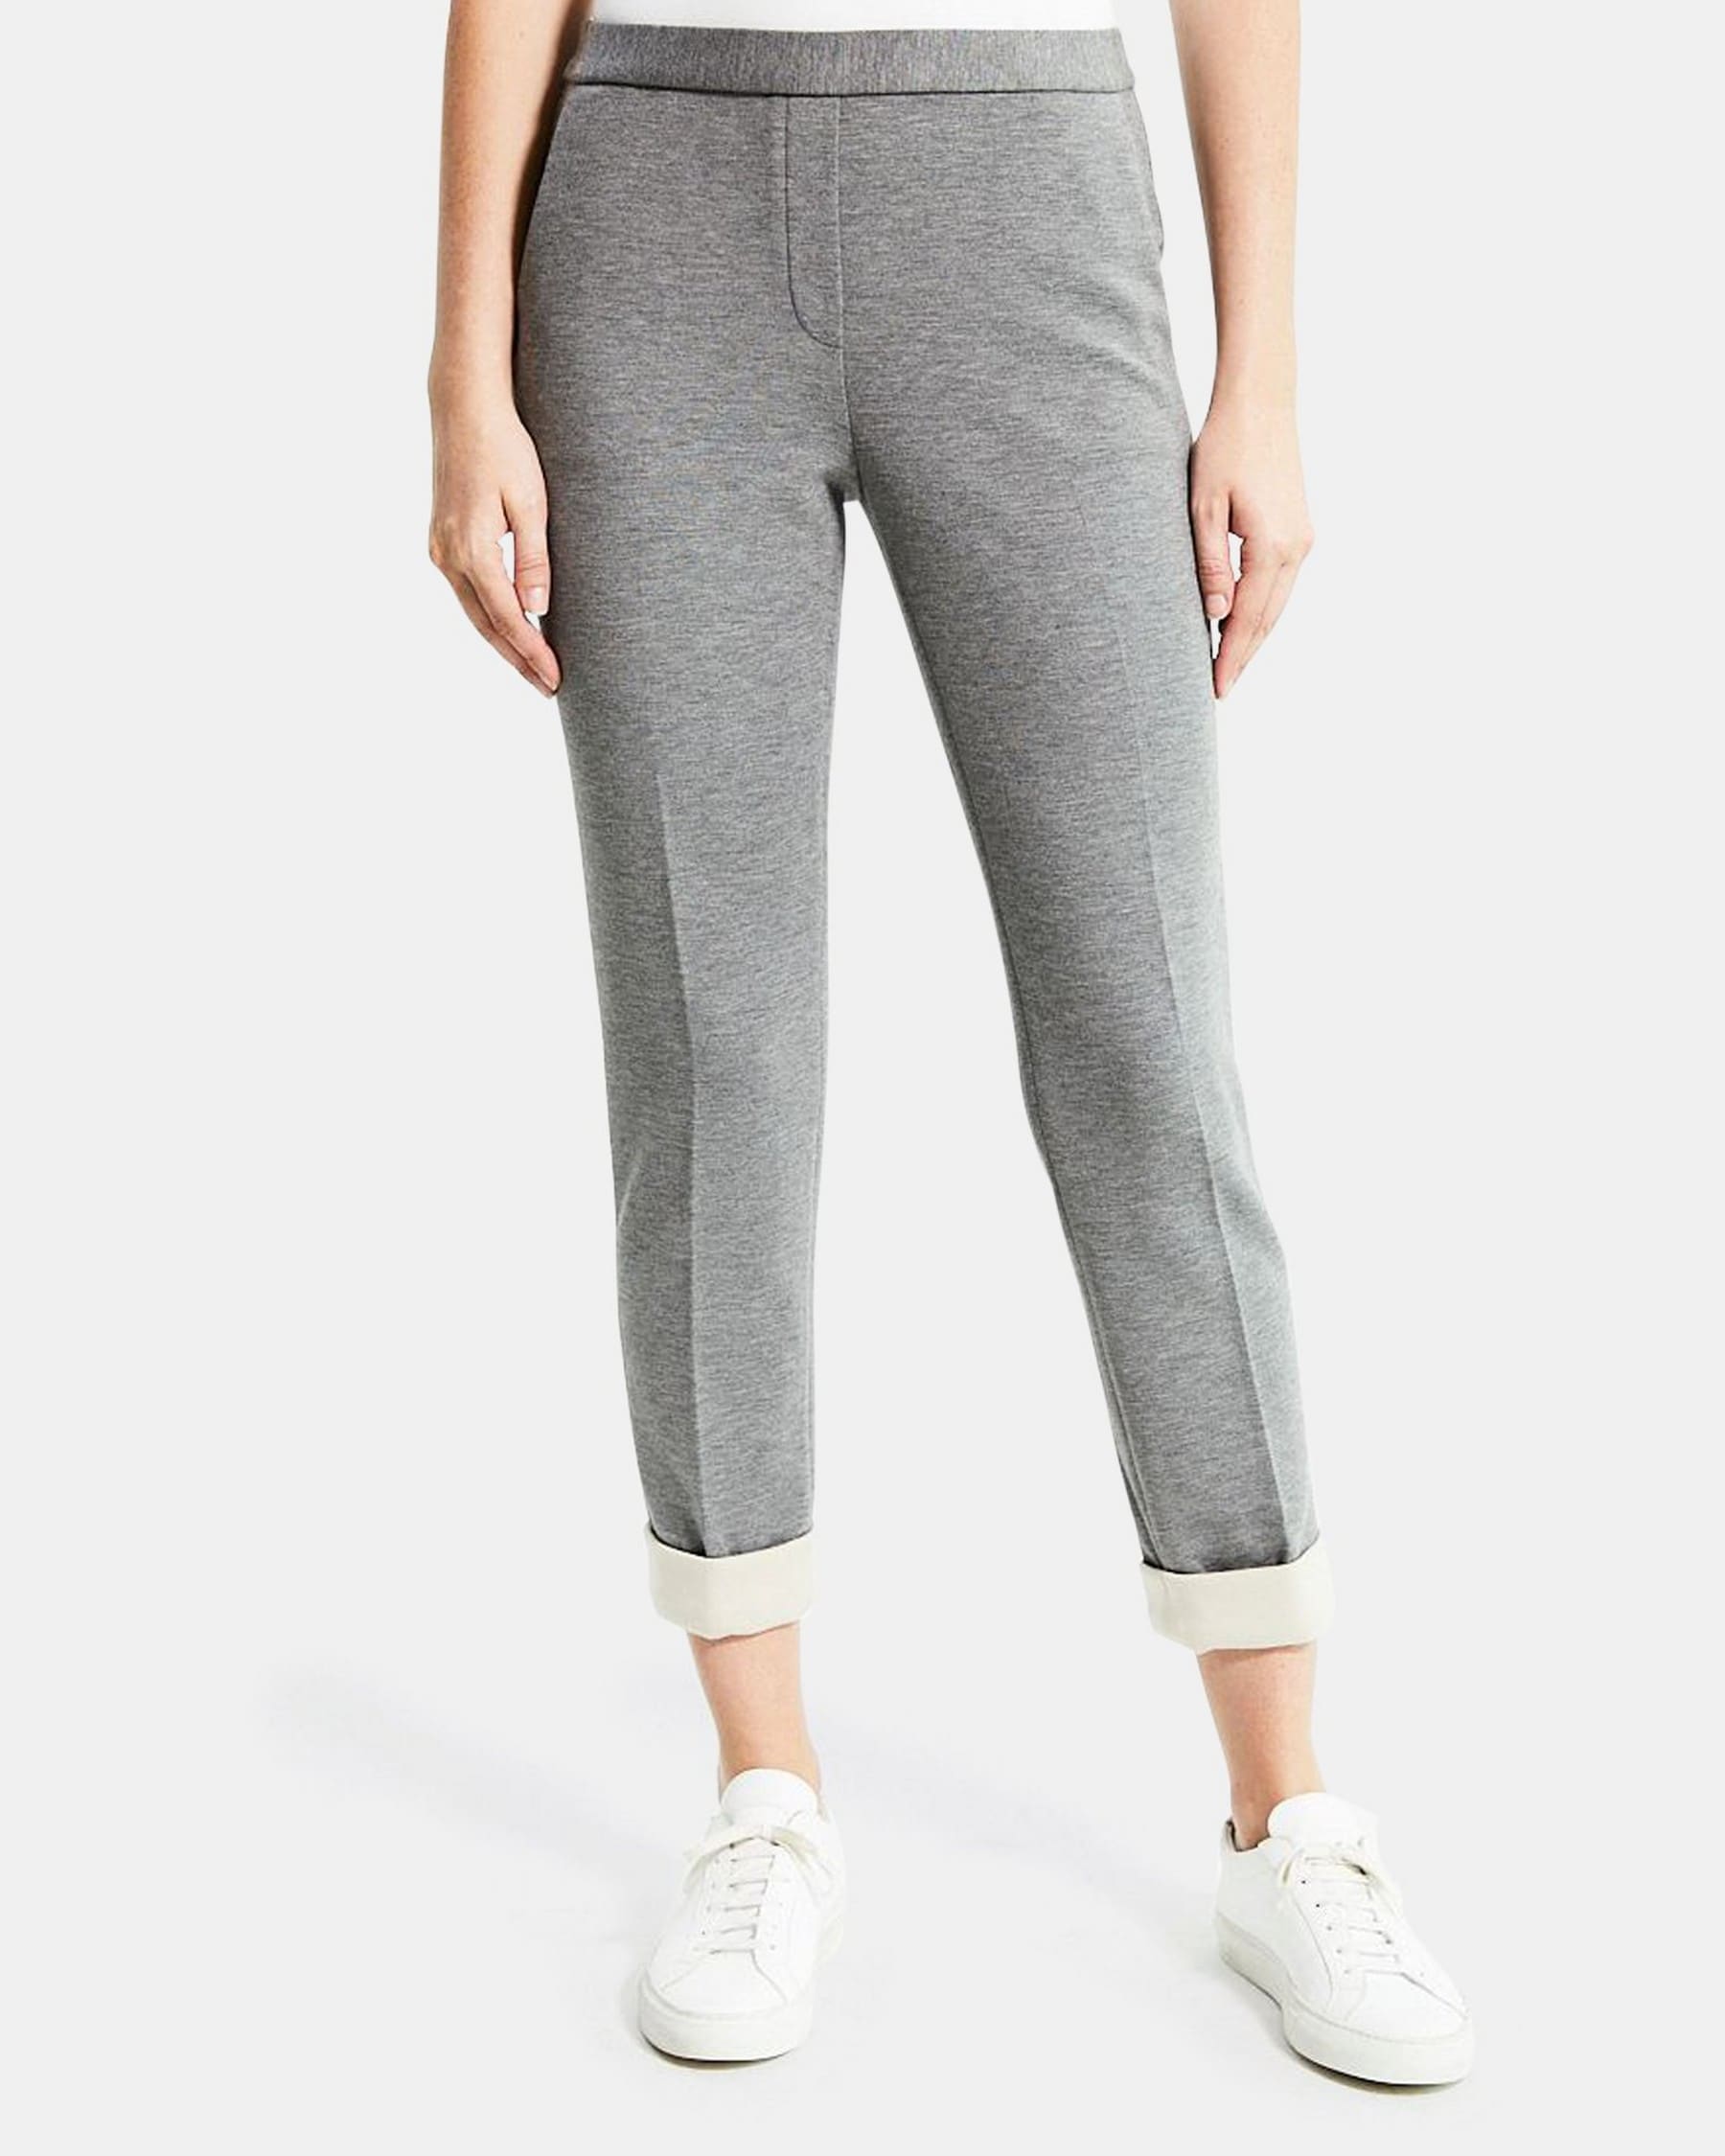 띠어리 Theory Slim Cropped Pull-On Pant in Double-Knit Jersey,GREY MELANGE/CHARCOAL MELANGE